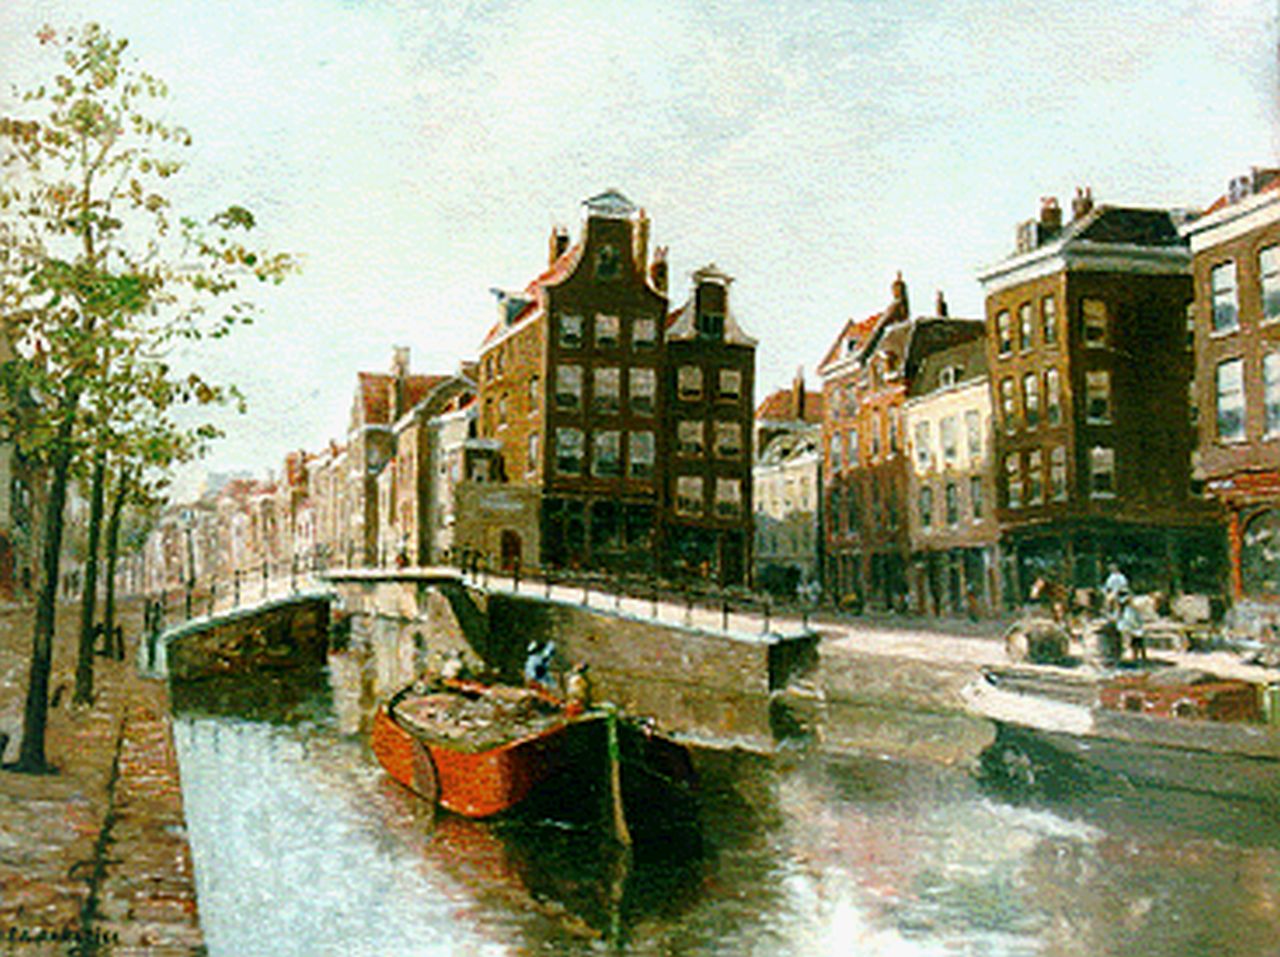 Paradies H.C.A.  | Herman Cornelis Adolf Paradies, Schuiten in het Haagse Veer, Rotterdam, olieverf op paneel 23,9 x 32,2 cm, gesigneerd linksonder